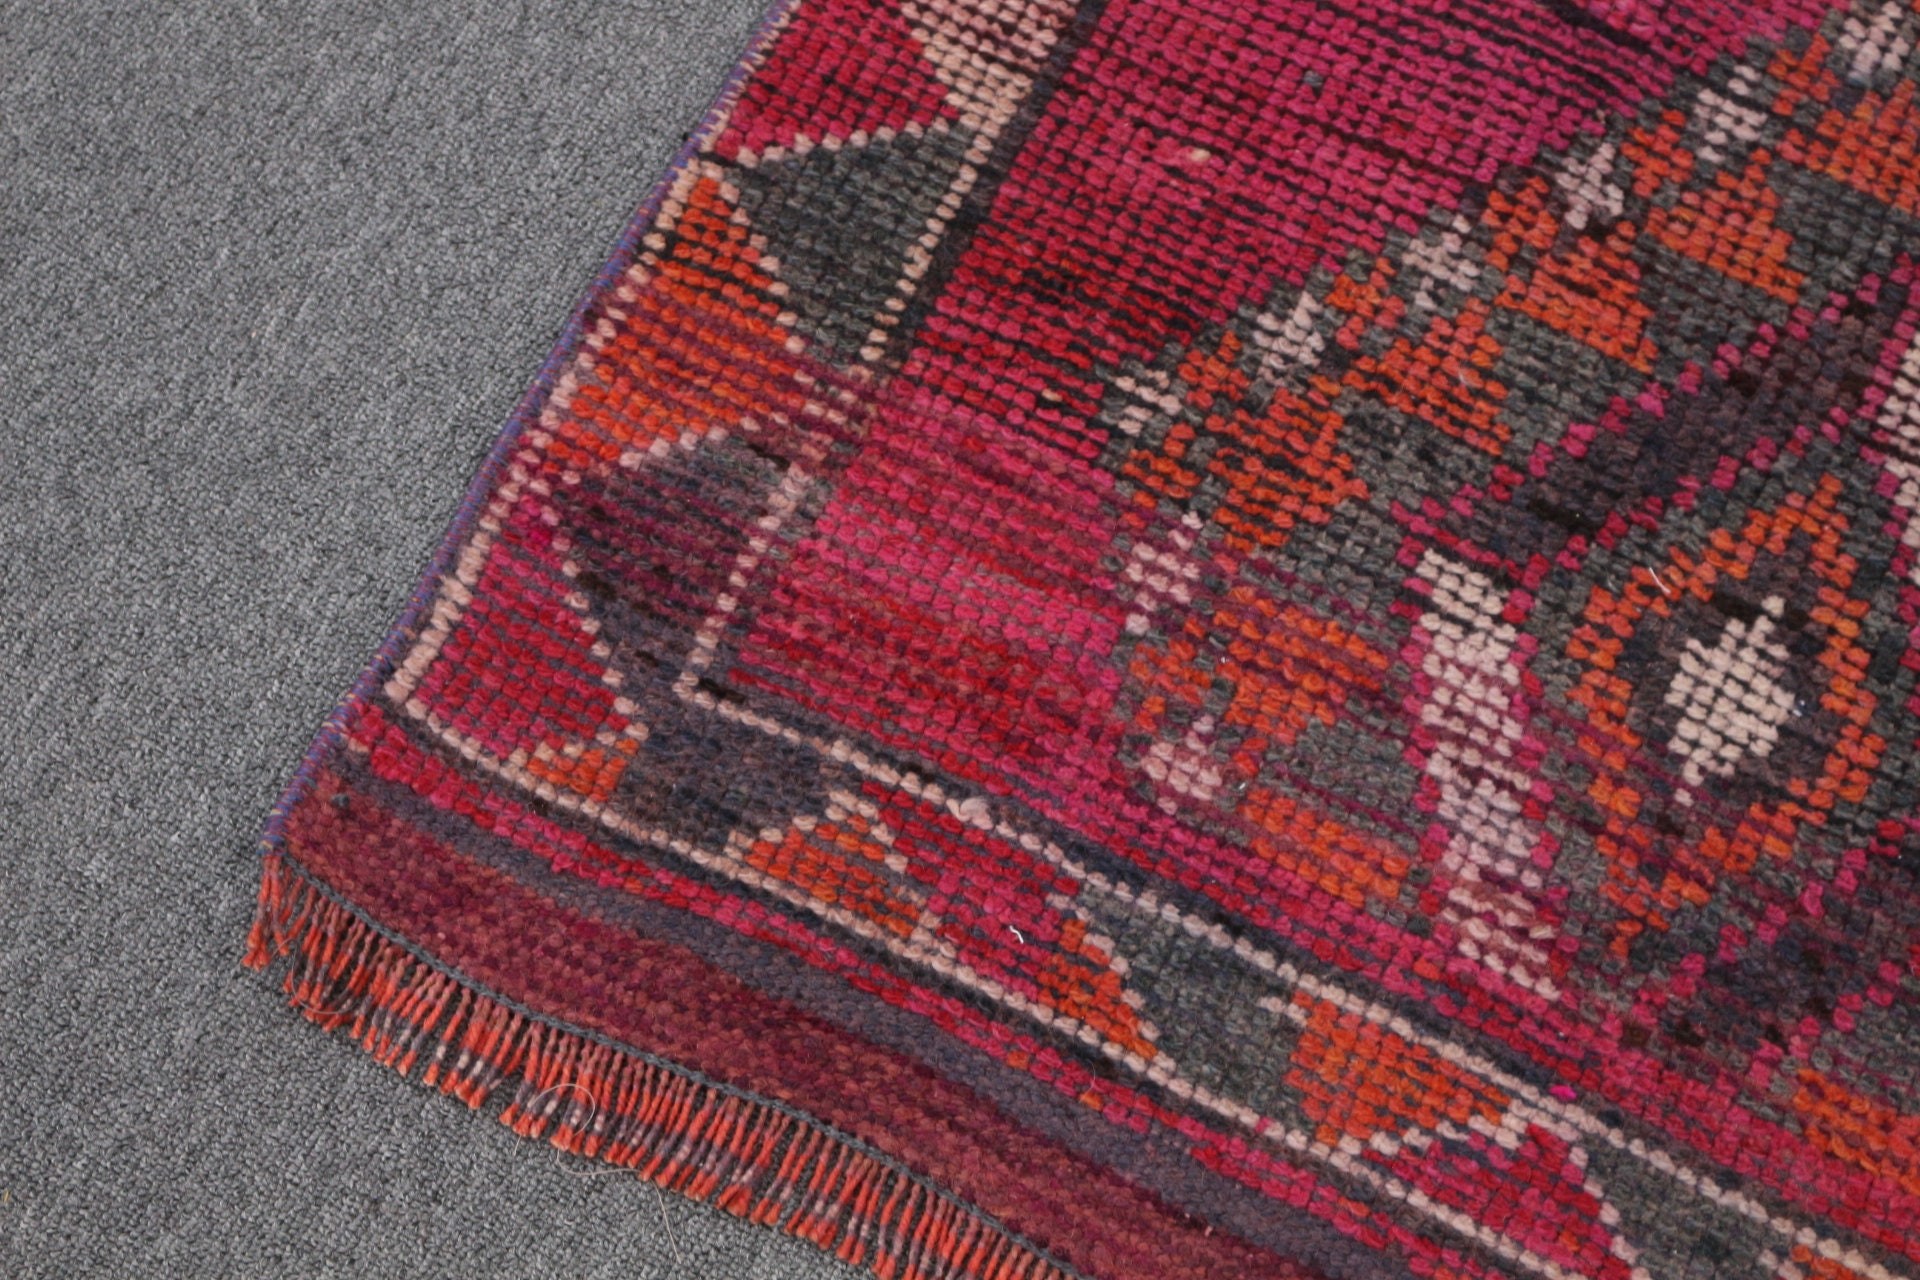 Anatolian Rugs, Pale Rug, Vintage Rug, Wool Rugs, Kitchen Rug, 2.5x11.6 ft Runner Rug, Corridor Rug, Turkish Rugs, Purple Bedroom Rugs